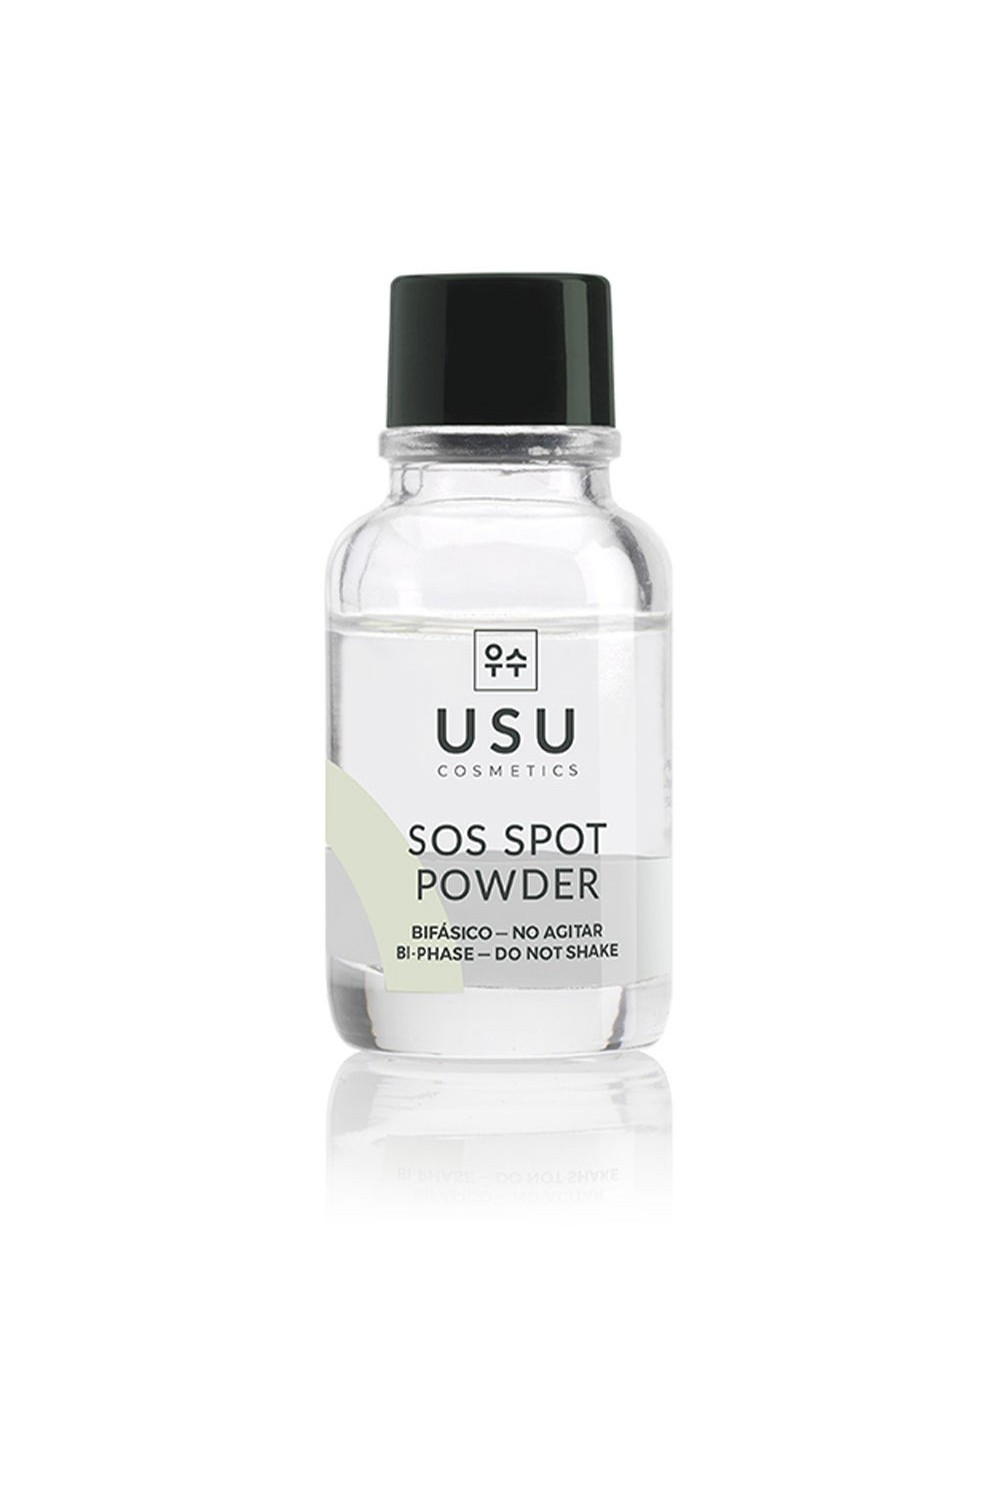 Usu Cosmetics Sos Spot Powder 18g